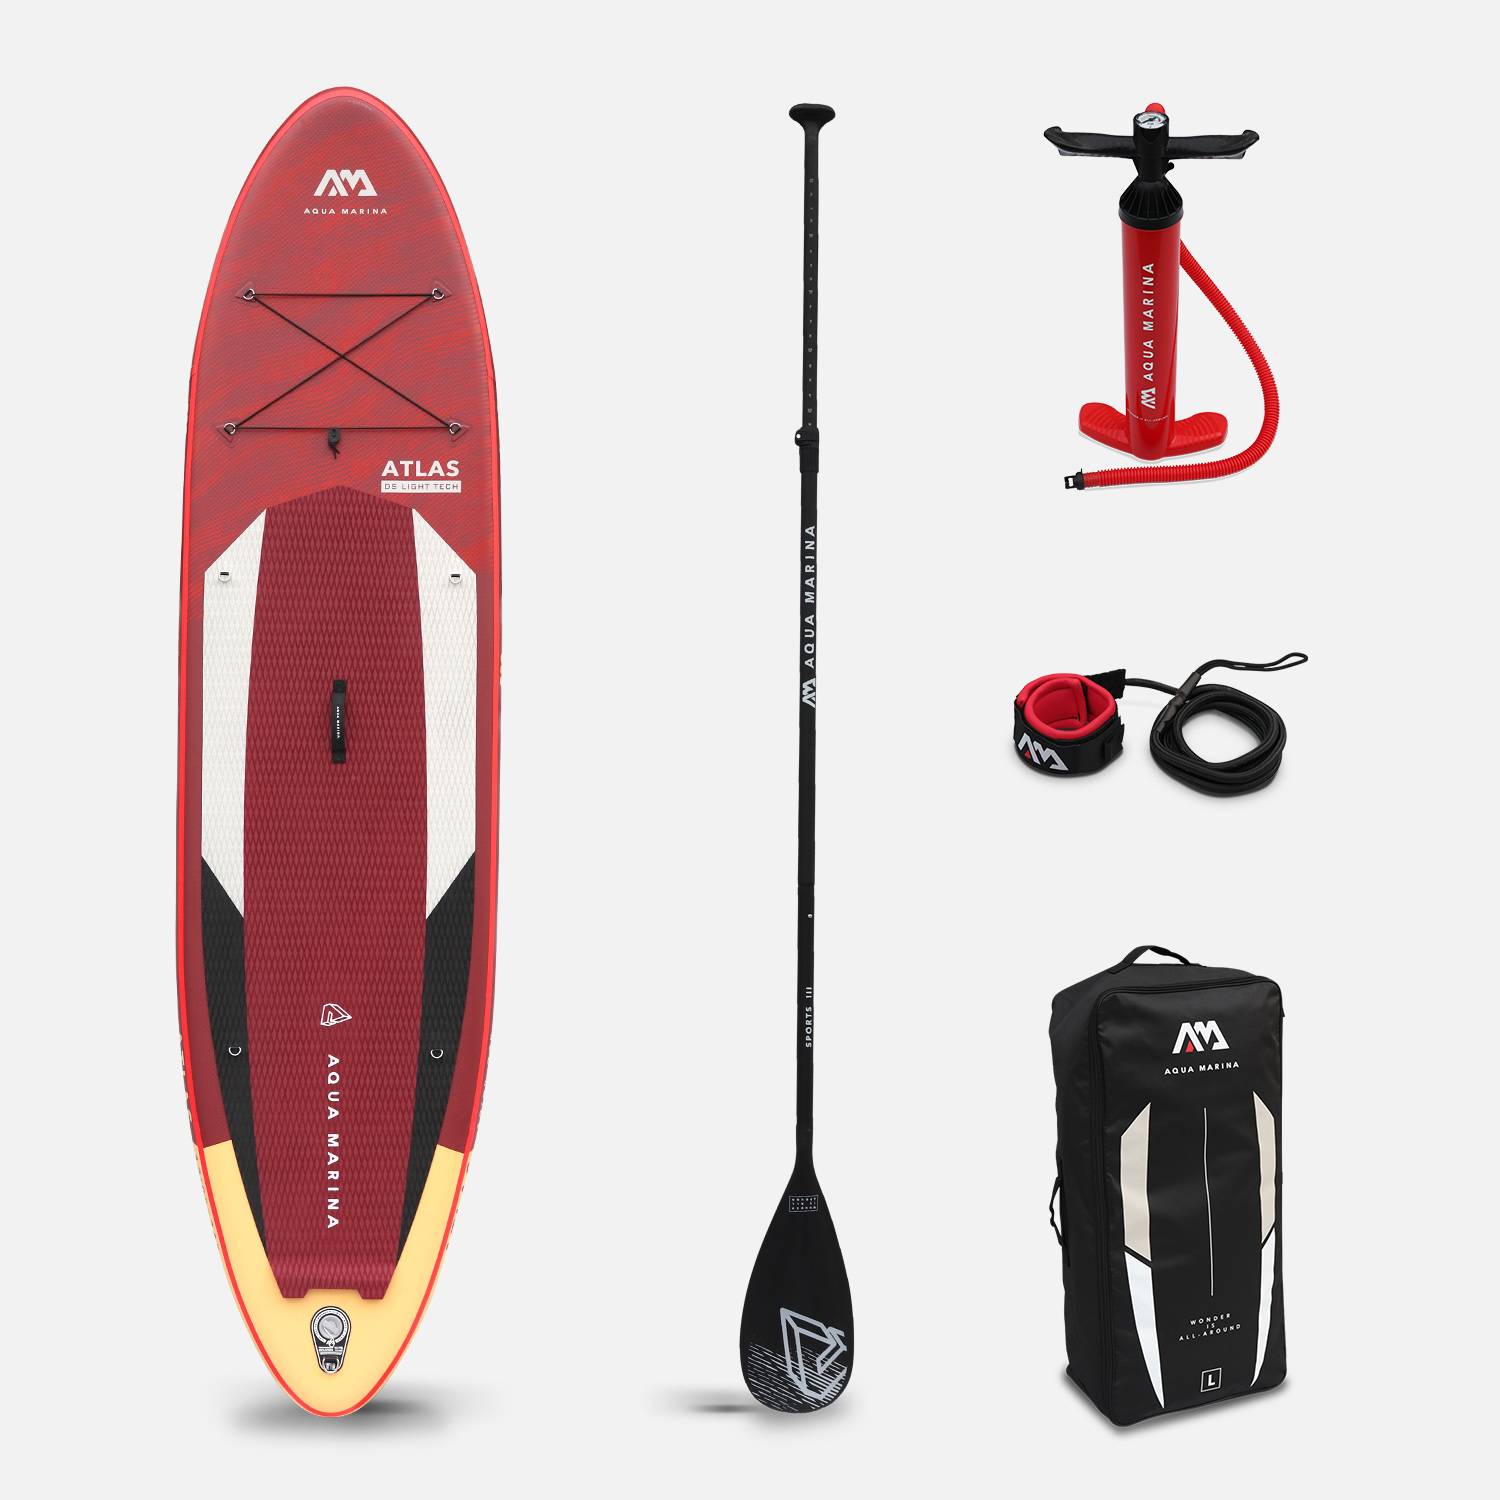 Prancha Paddle Surf - Atlas 12'- 15cm de espessura - Pack de paddle insuflável (SUP) com bomba de alta pressão, paddle, leash e saco de armazenamento incluídos Photo5